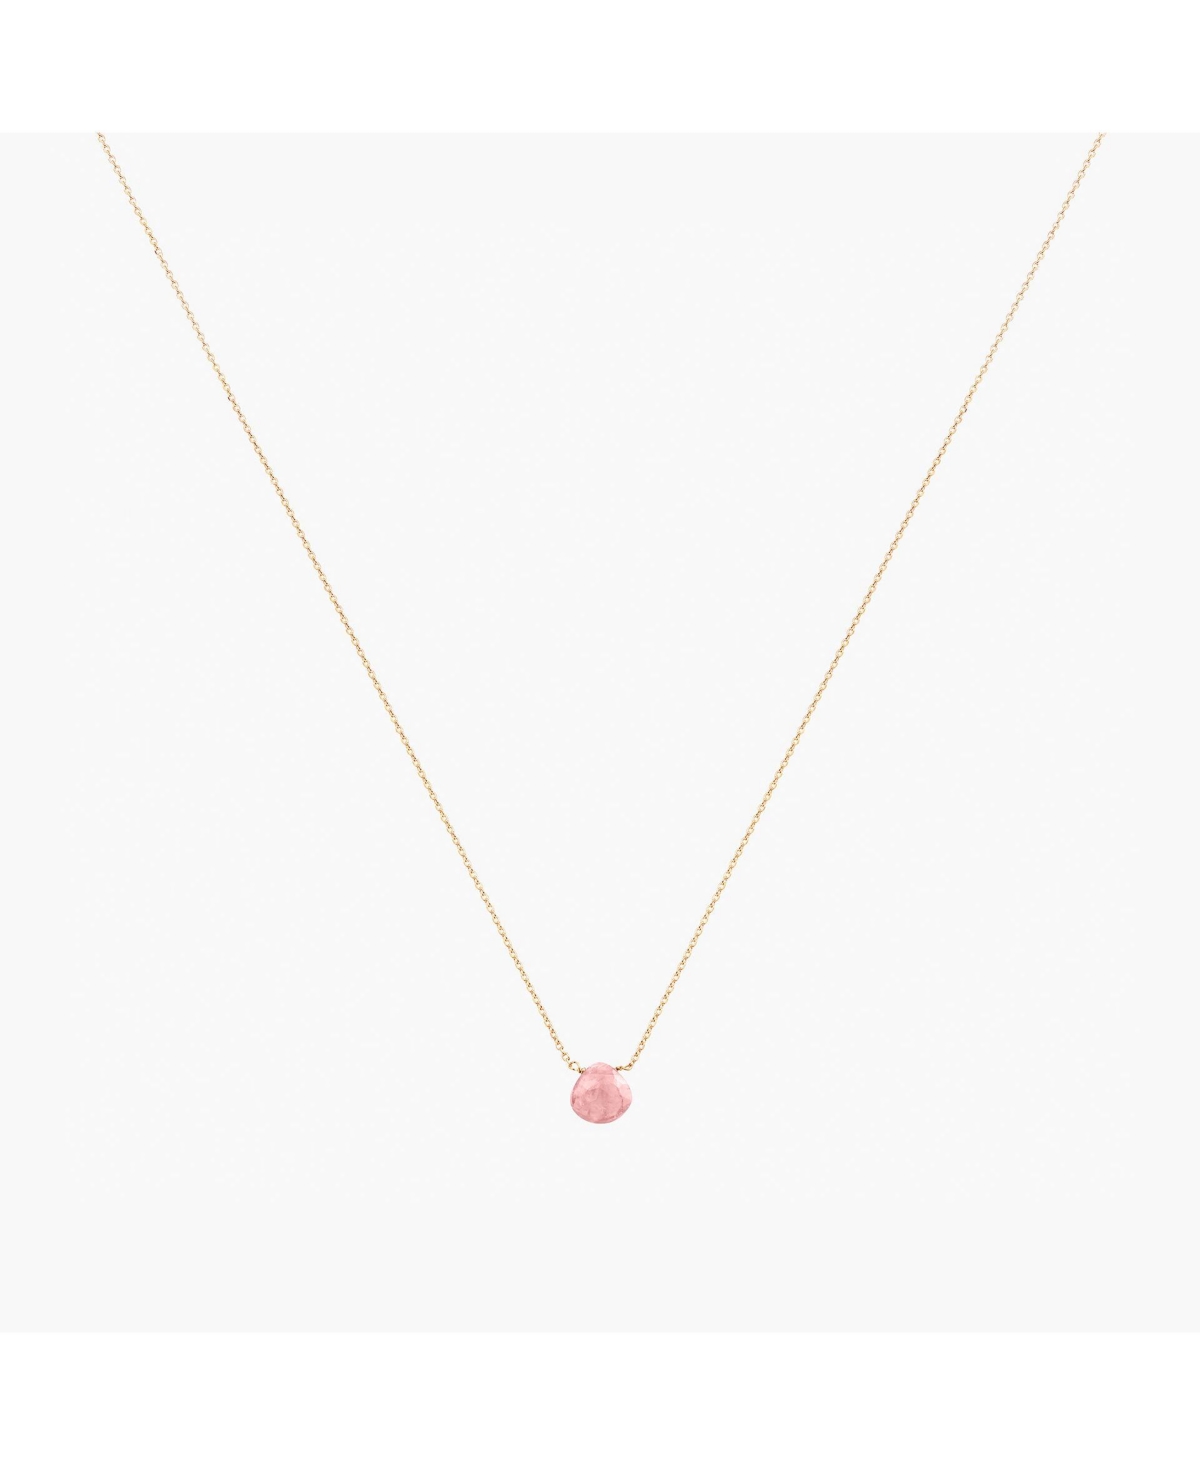 Gemstone Necklace - Pink rhodolite